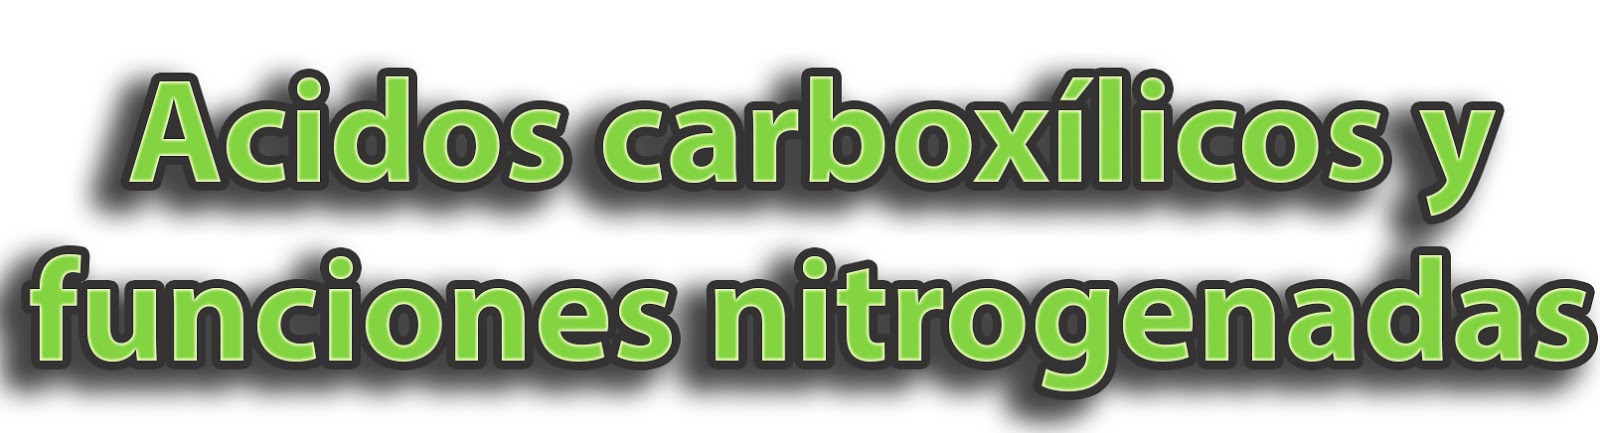 Química Grado 11 Ácidos Carboxílicos Y Funciones Nitrogenadas